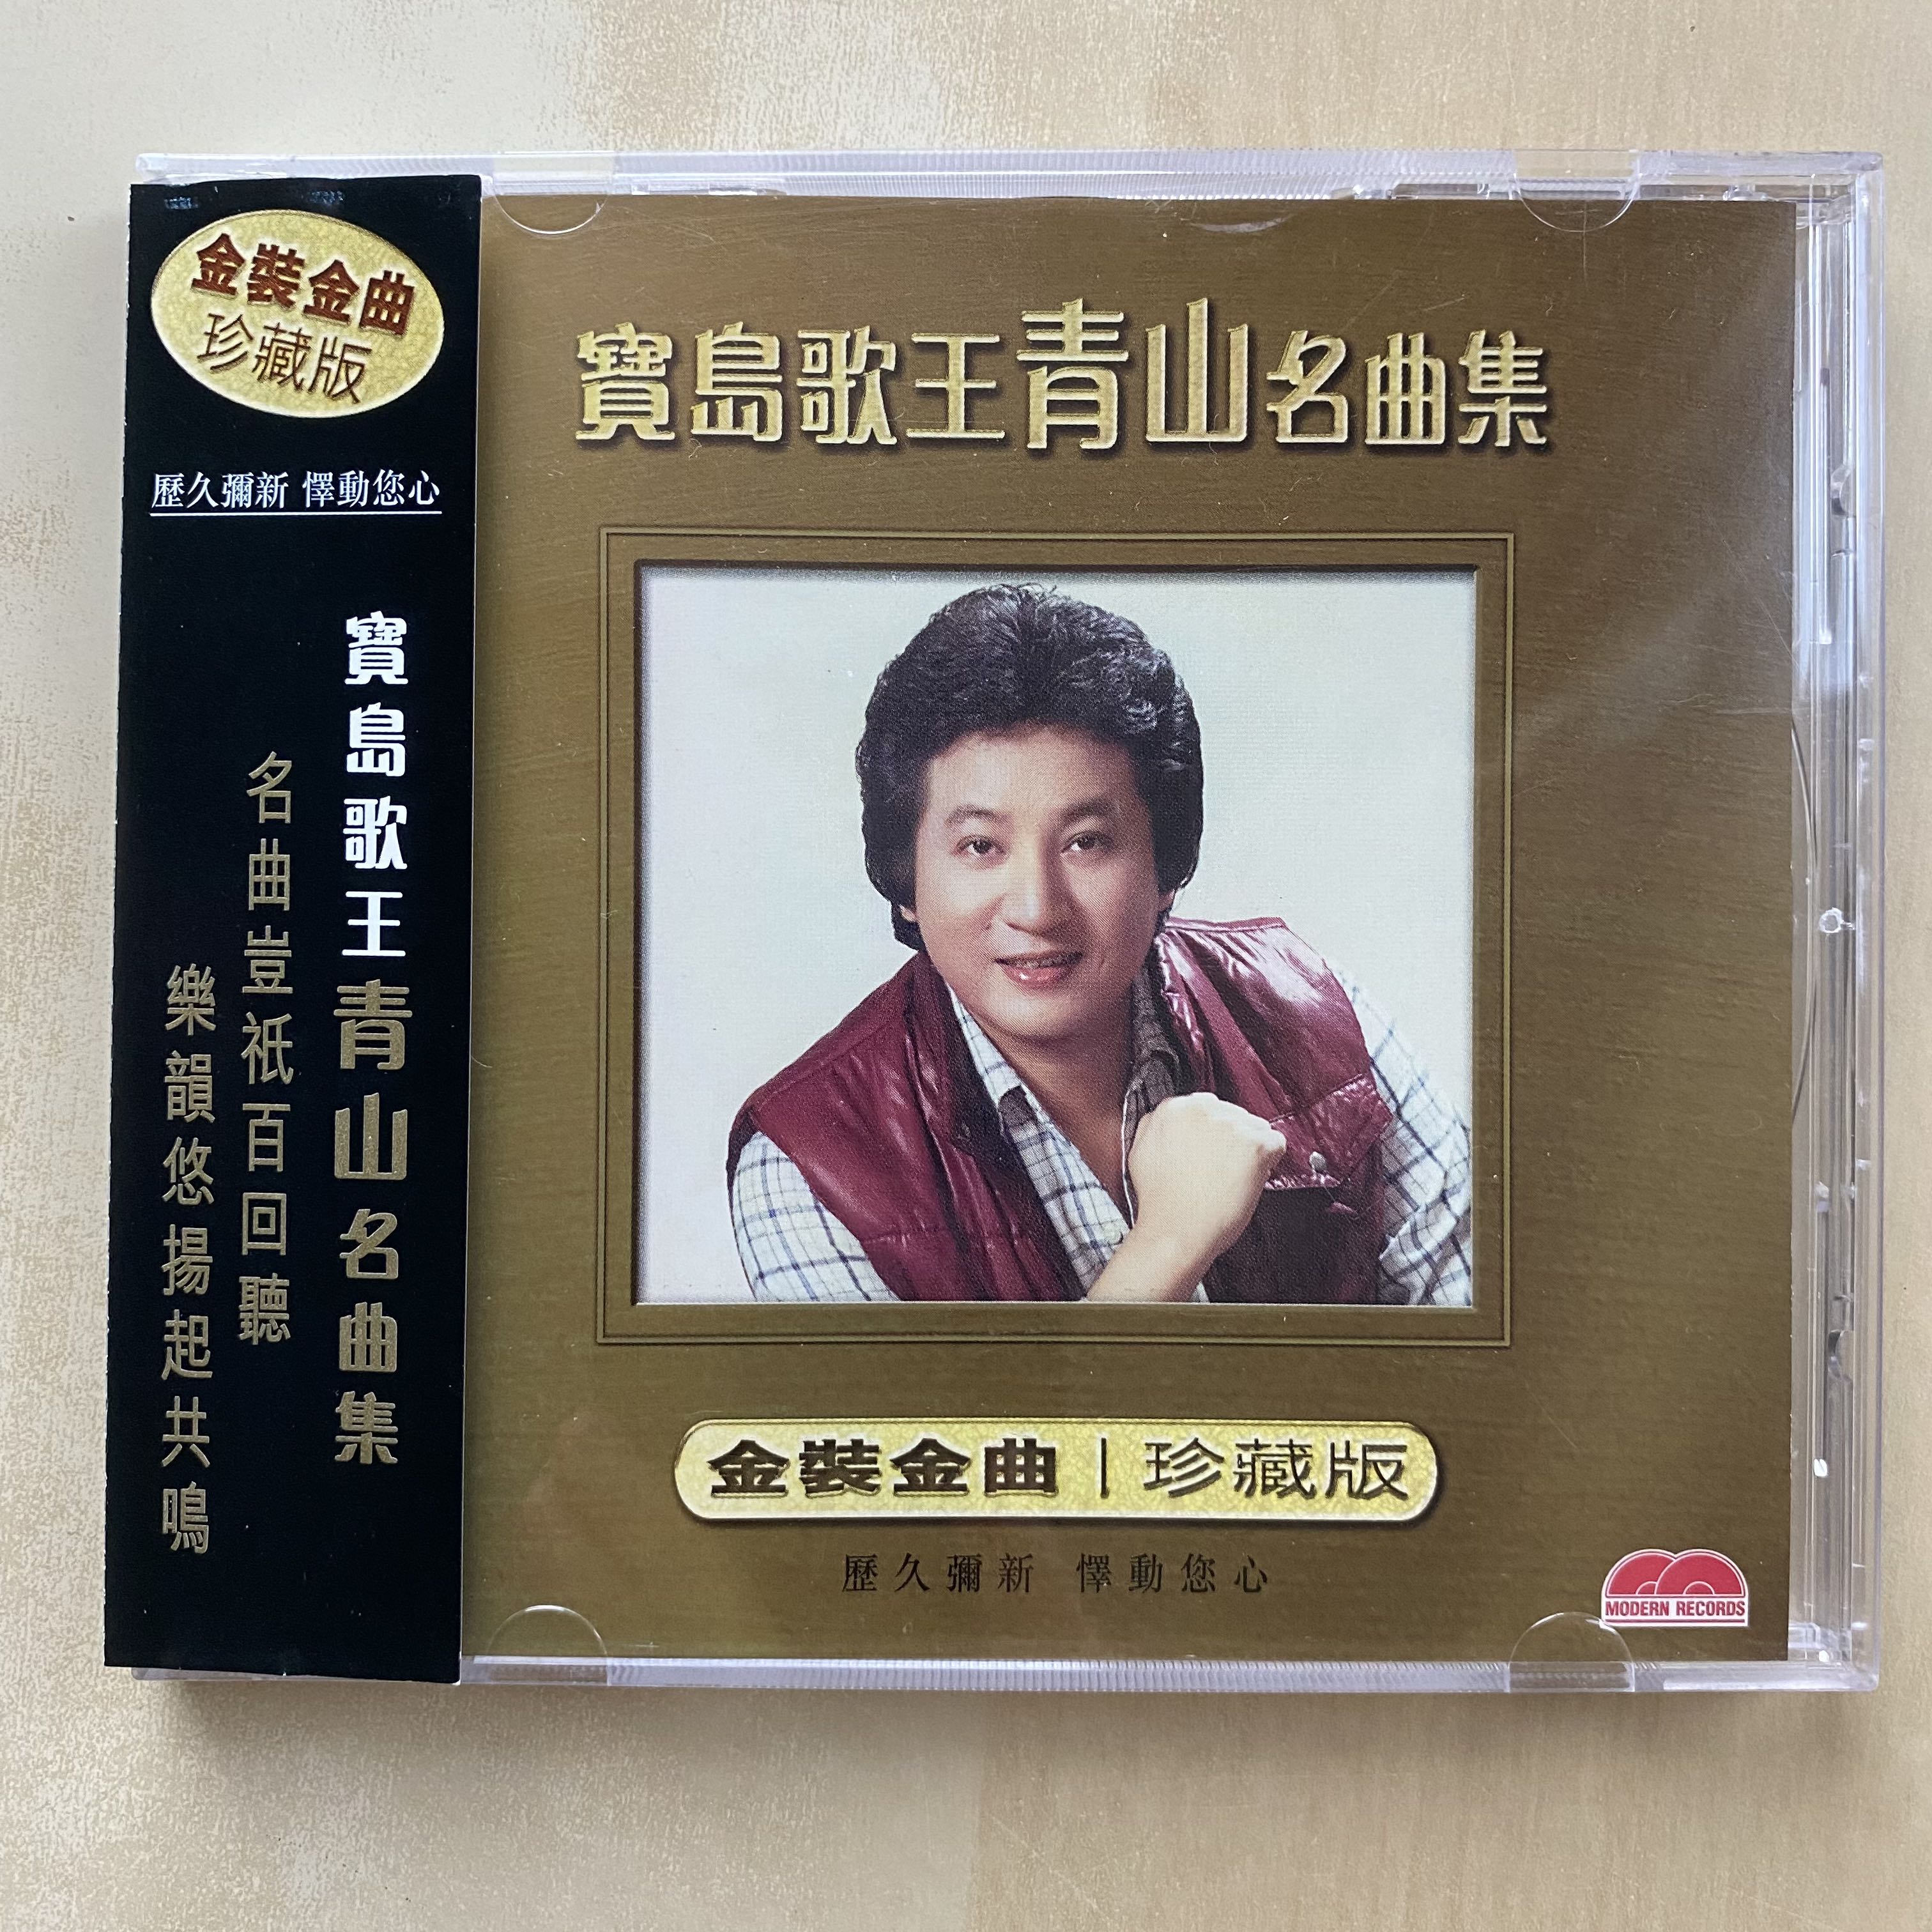 CD丨寶島歌王青山名曲集, 興趣及遊戲, 音樂、樂器& 配件, 音樂與媒體 